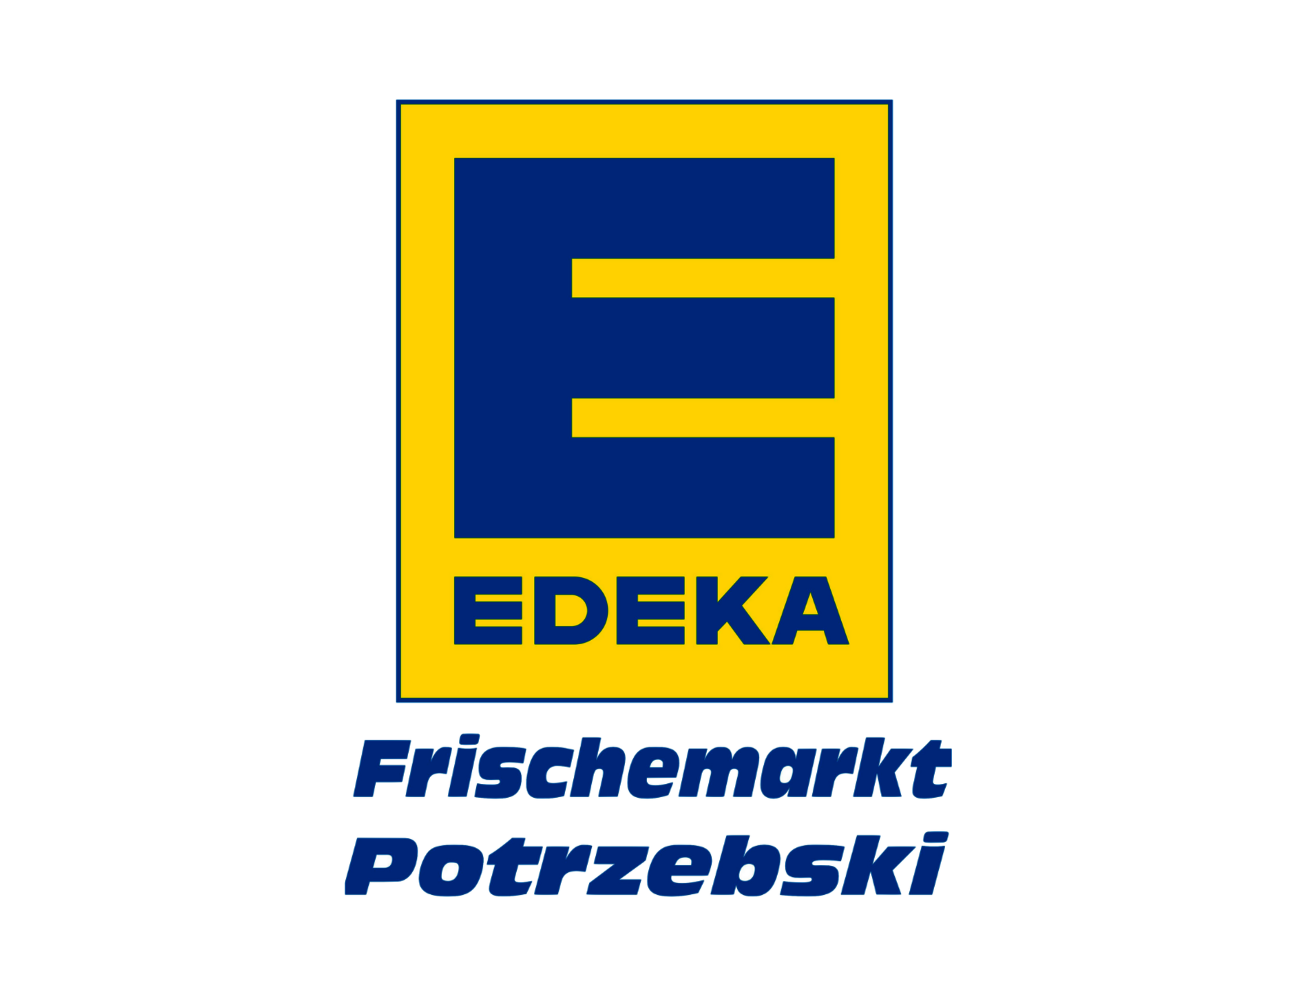 Edeka_Potrzebski_logo